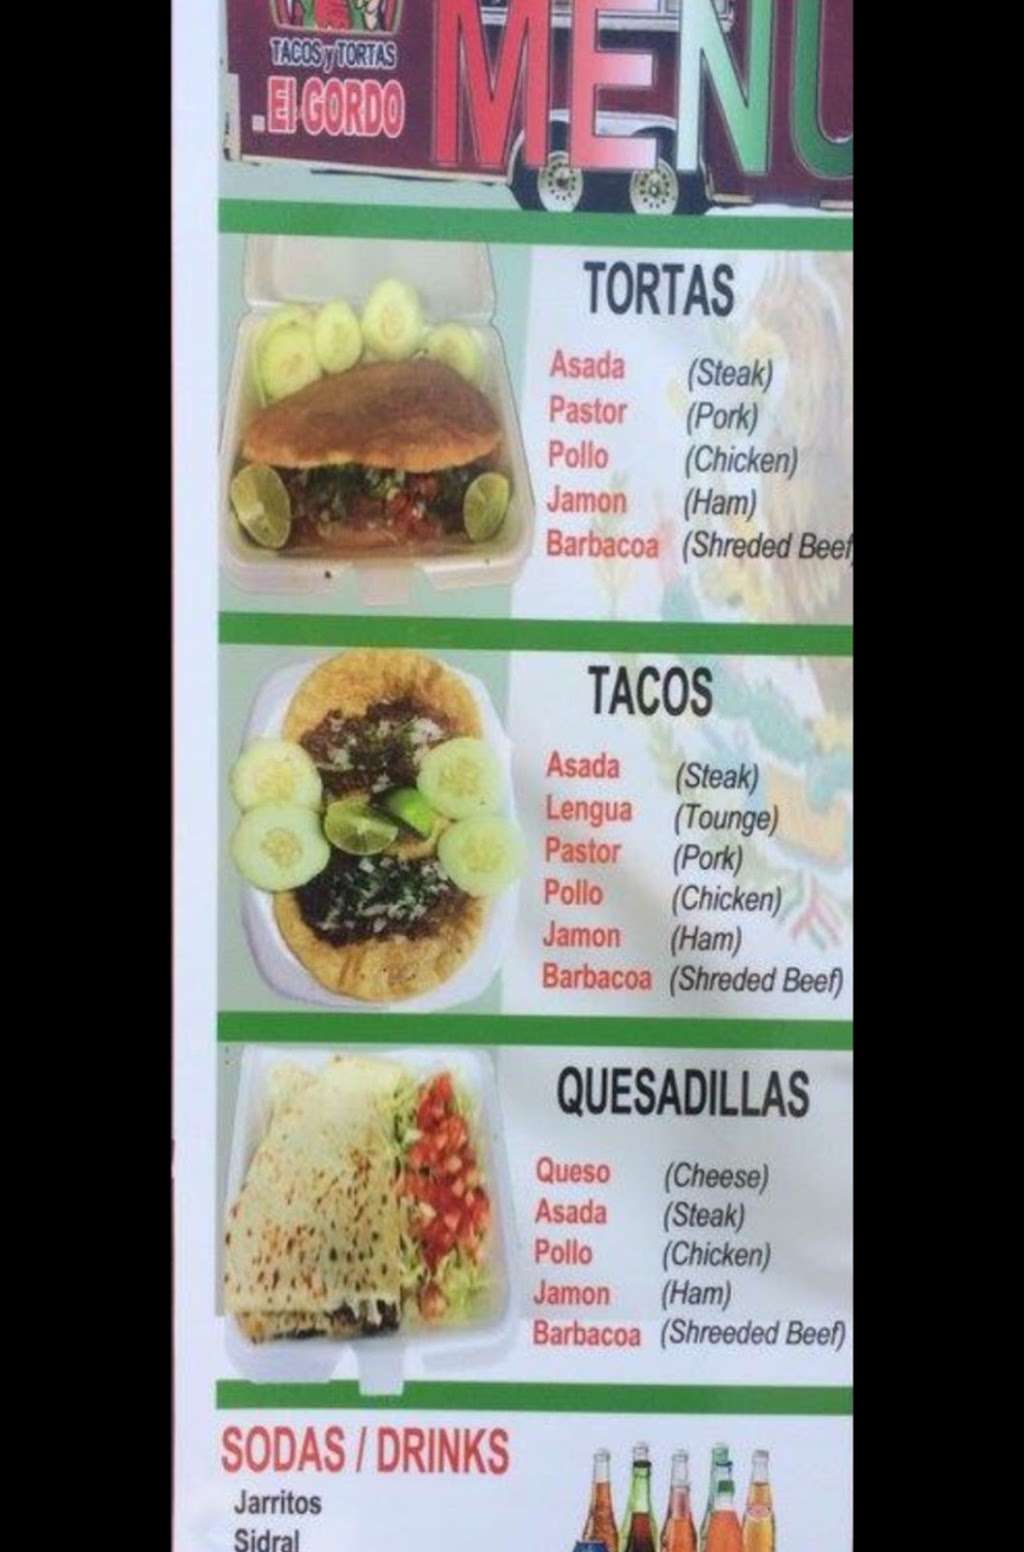 El Gordo Tacos y Tortas | Stanley, NC 28164, USA